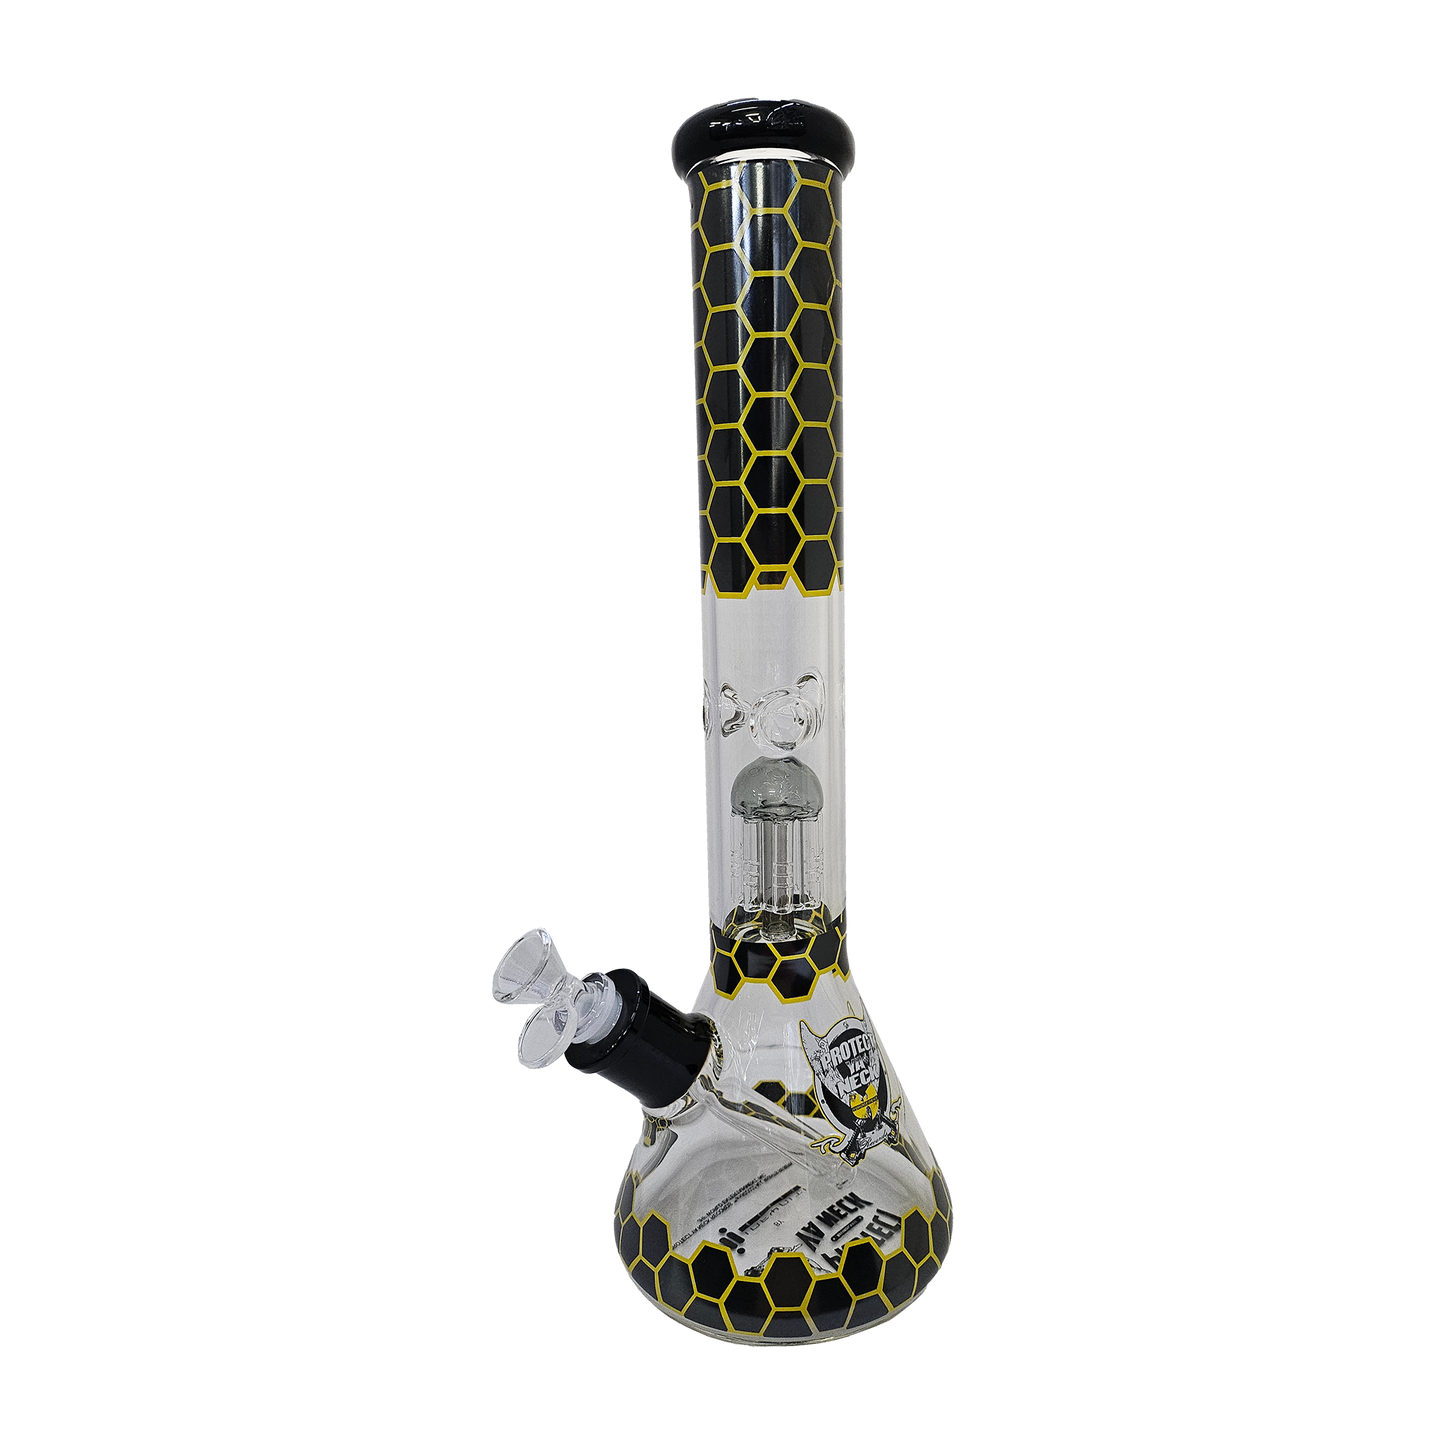 Honeycomb Infyniti 16" Wu Tang Clan Beaker Bong - Glass Bong - The Wee Smoke Shop